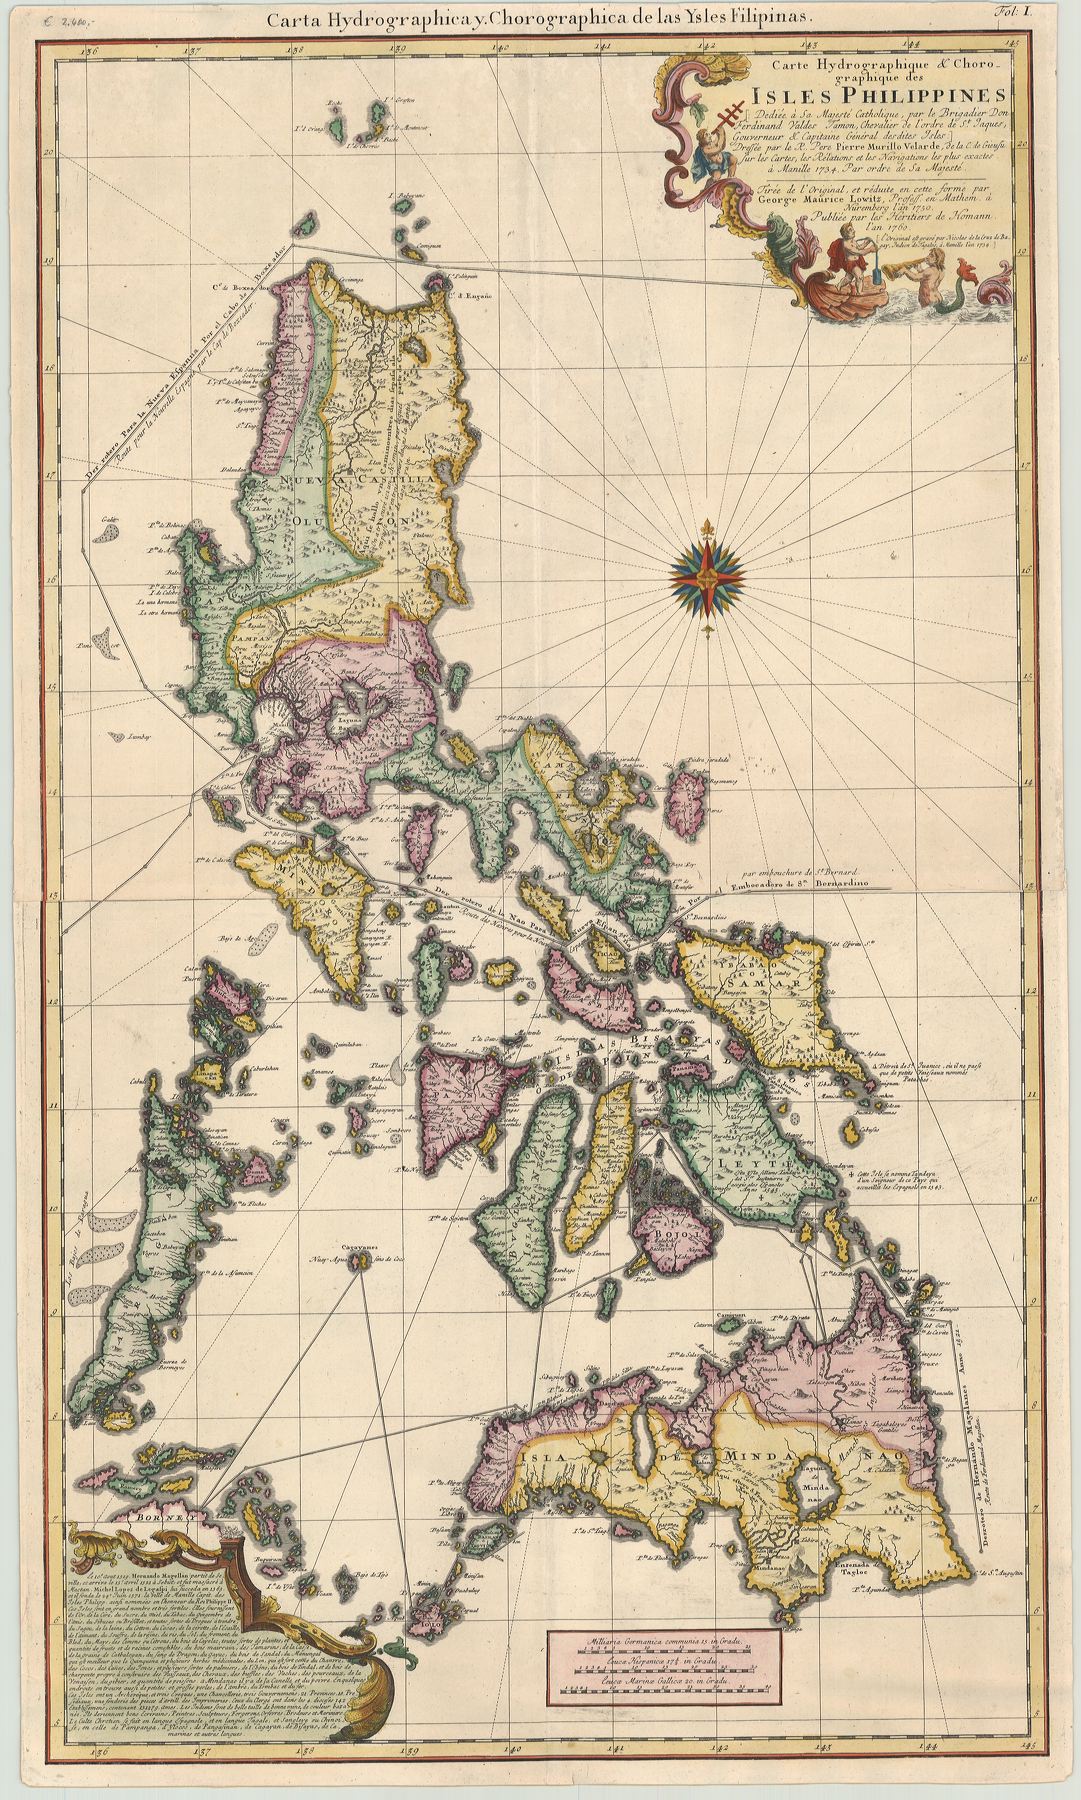 R2807  Homann Erben: Carte Hydrographique & Chorographique des ISLES PHILIPPINES 1750